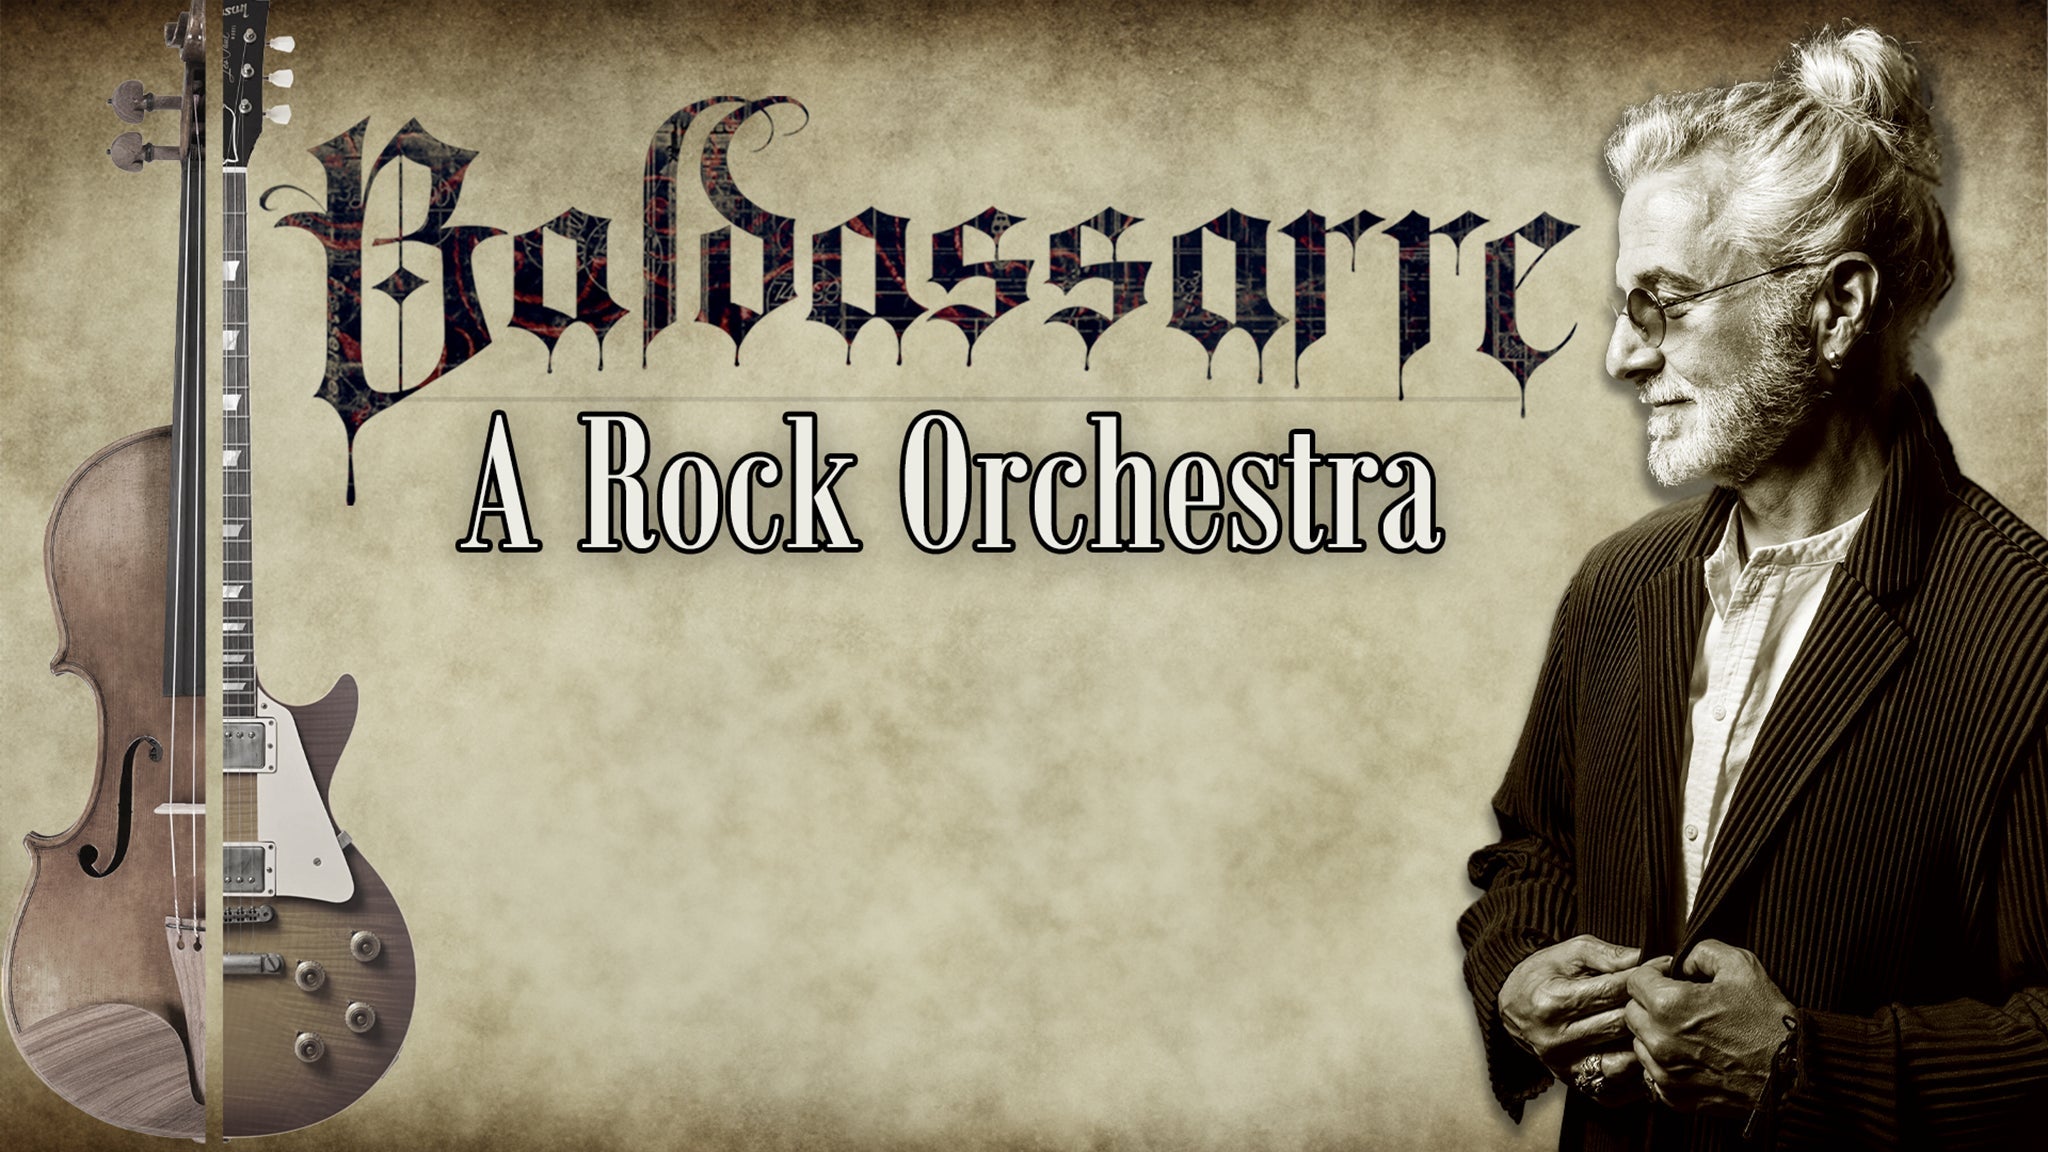 The Baldassarre Orchestra